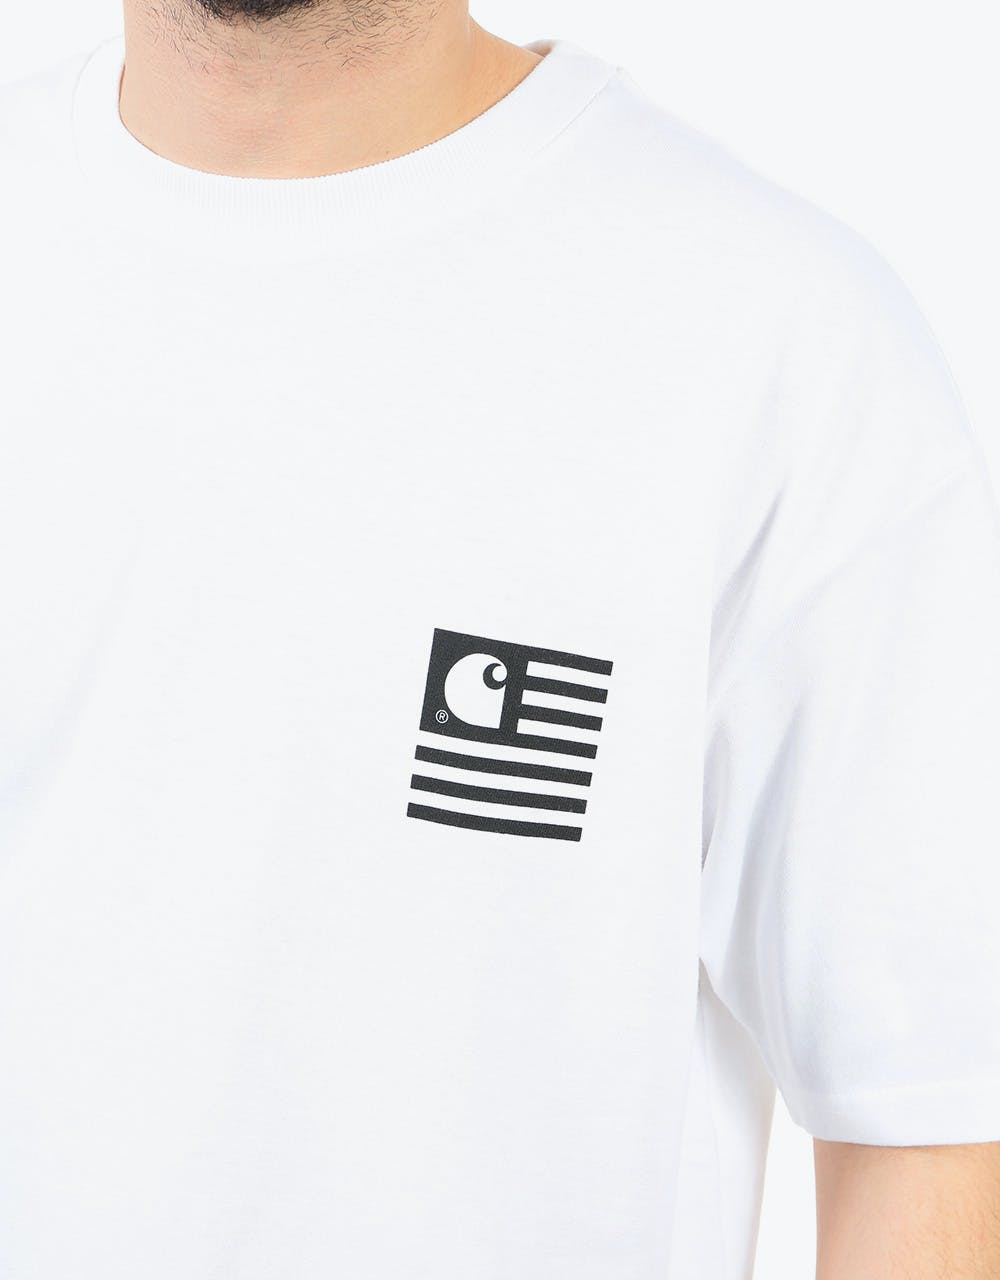 Carhartt WIP S/S State Chromo T-Shirt - White